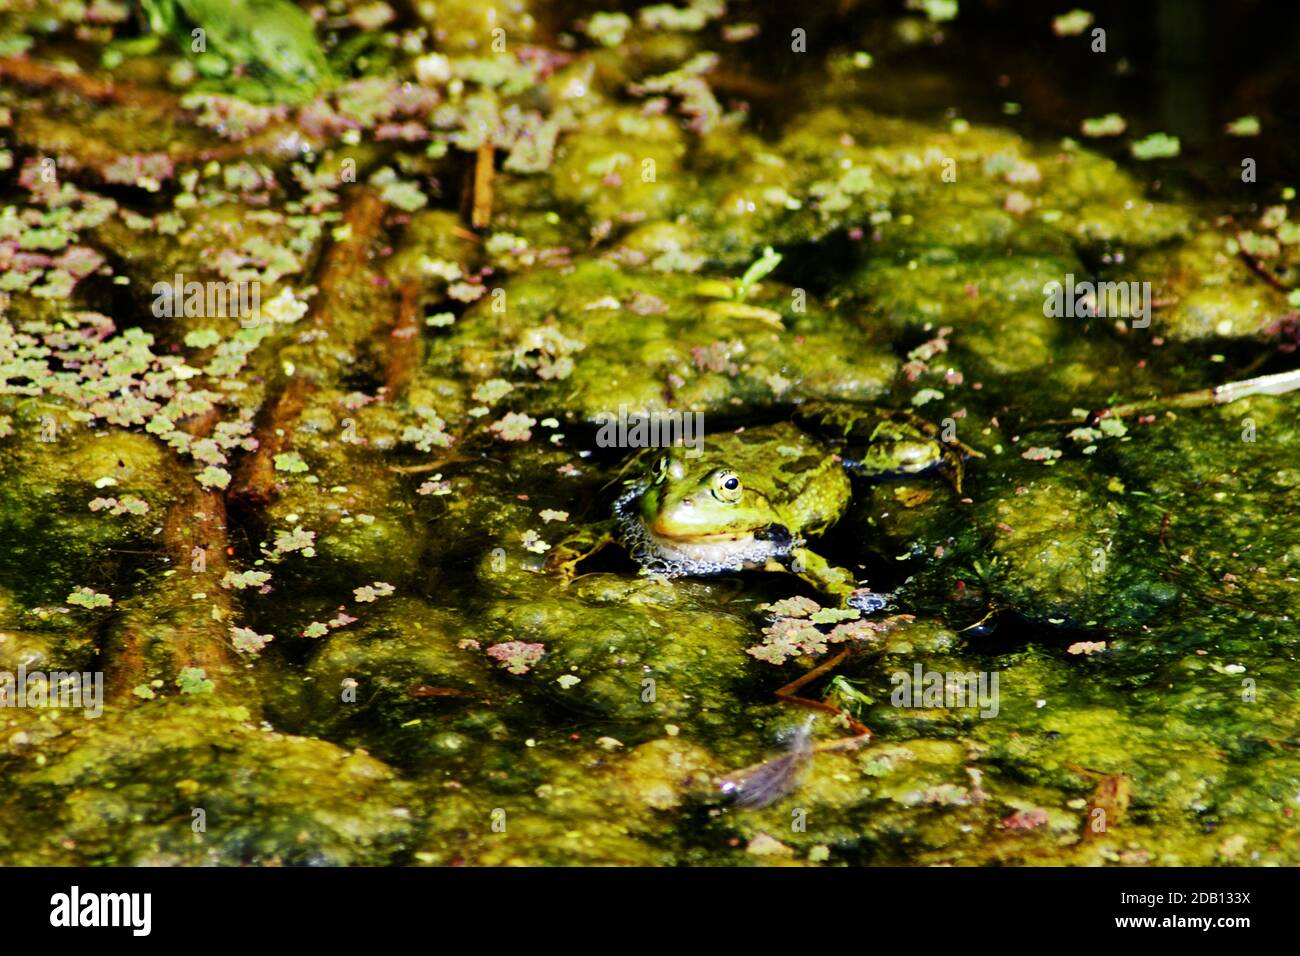 Rana de pantano (Pelophylax ridibundus) especie de rana de agua nativa de Europa, partes de Asia e introducida en el Reino Unido. La rana más grande de su rango Foto de stock